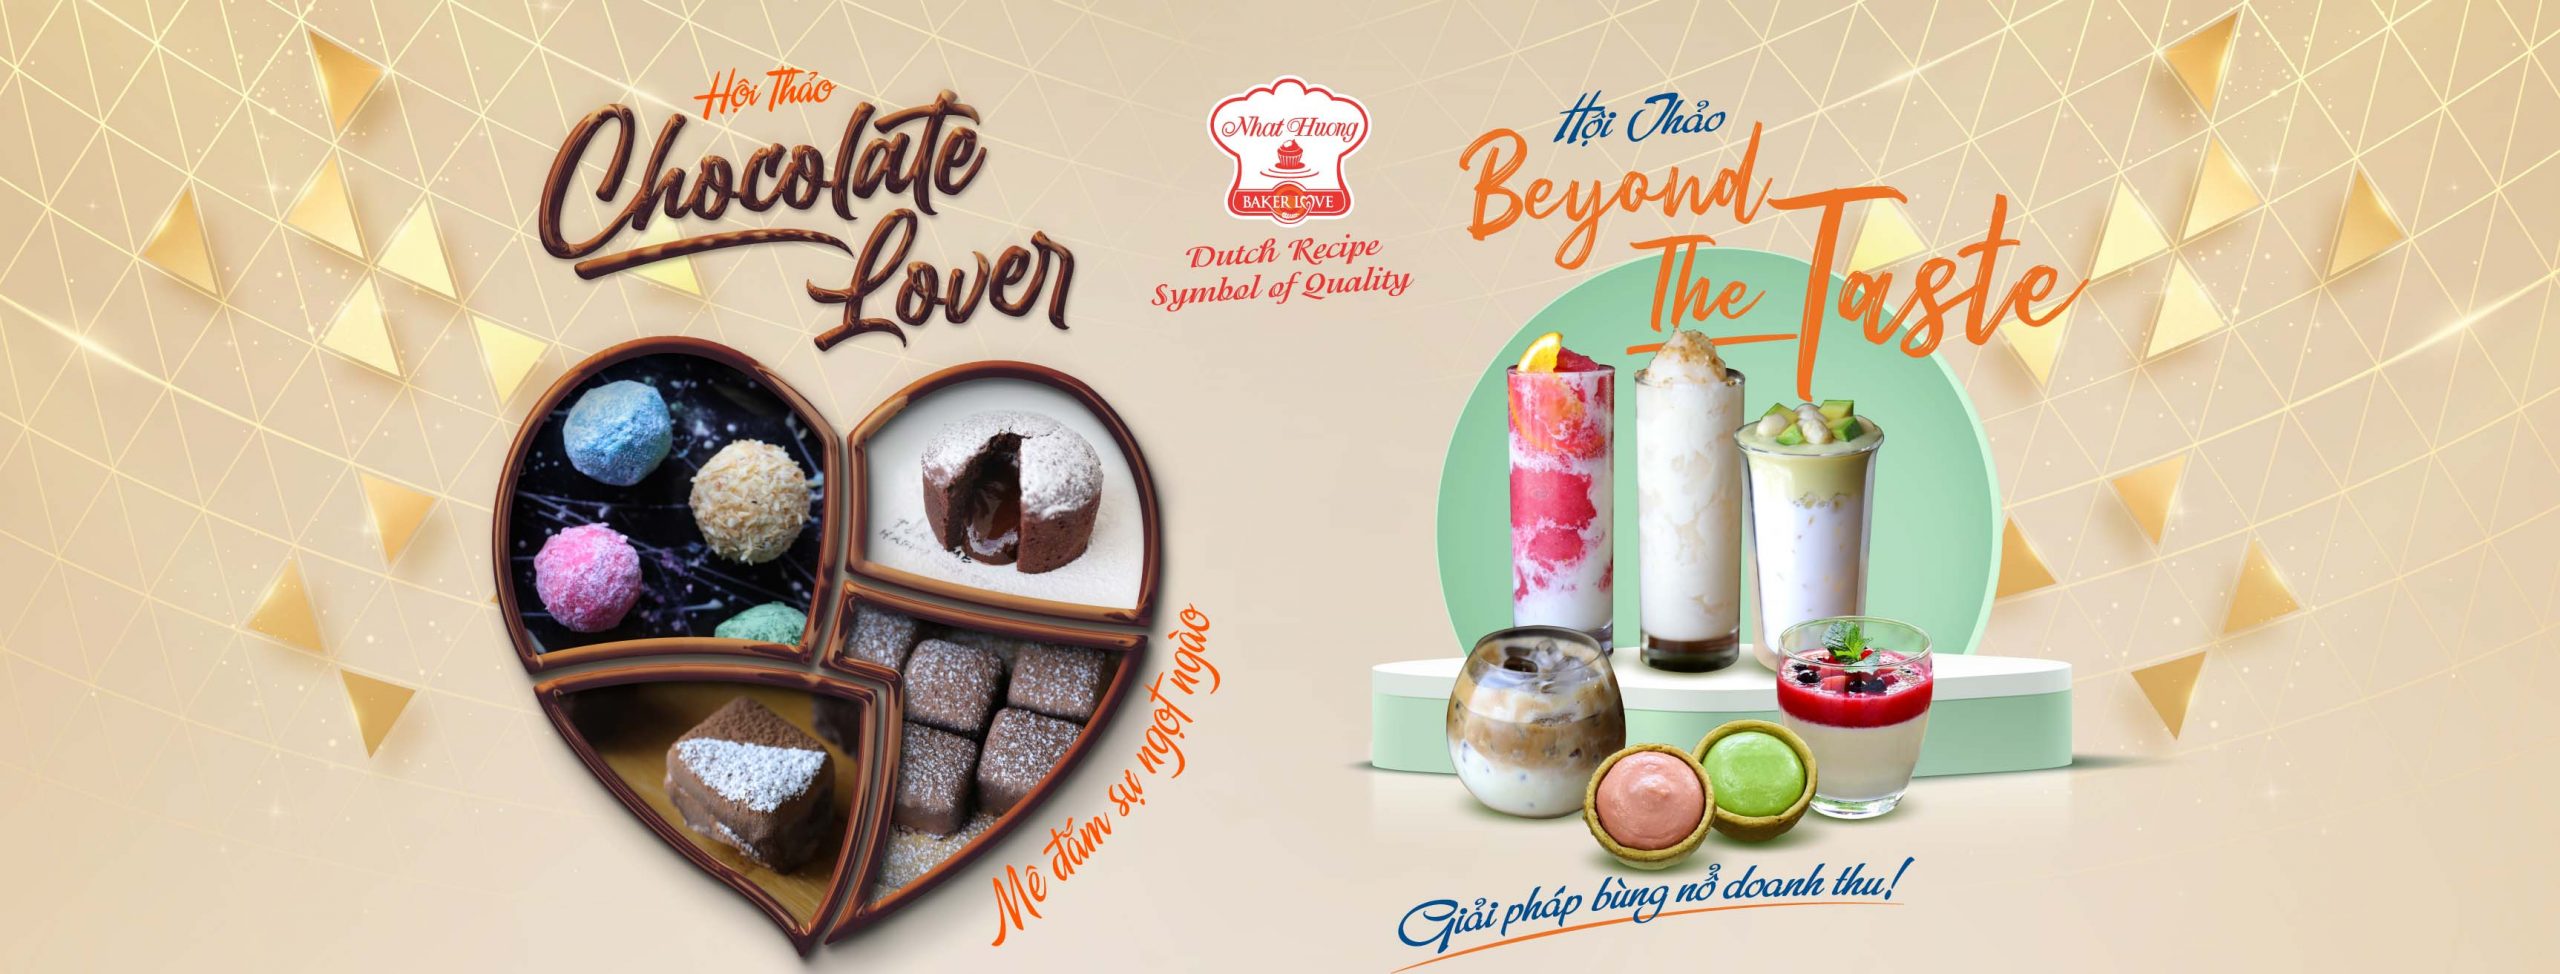 Thư mời hội thảo "Beyond The Taste" và "Chocolate Lover"